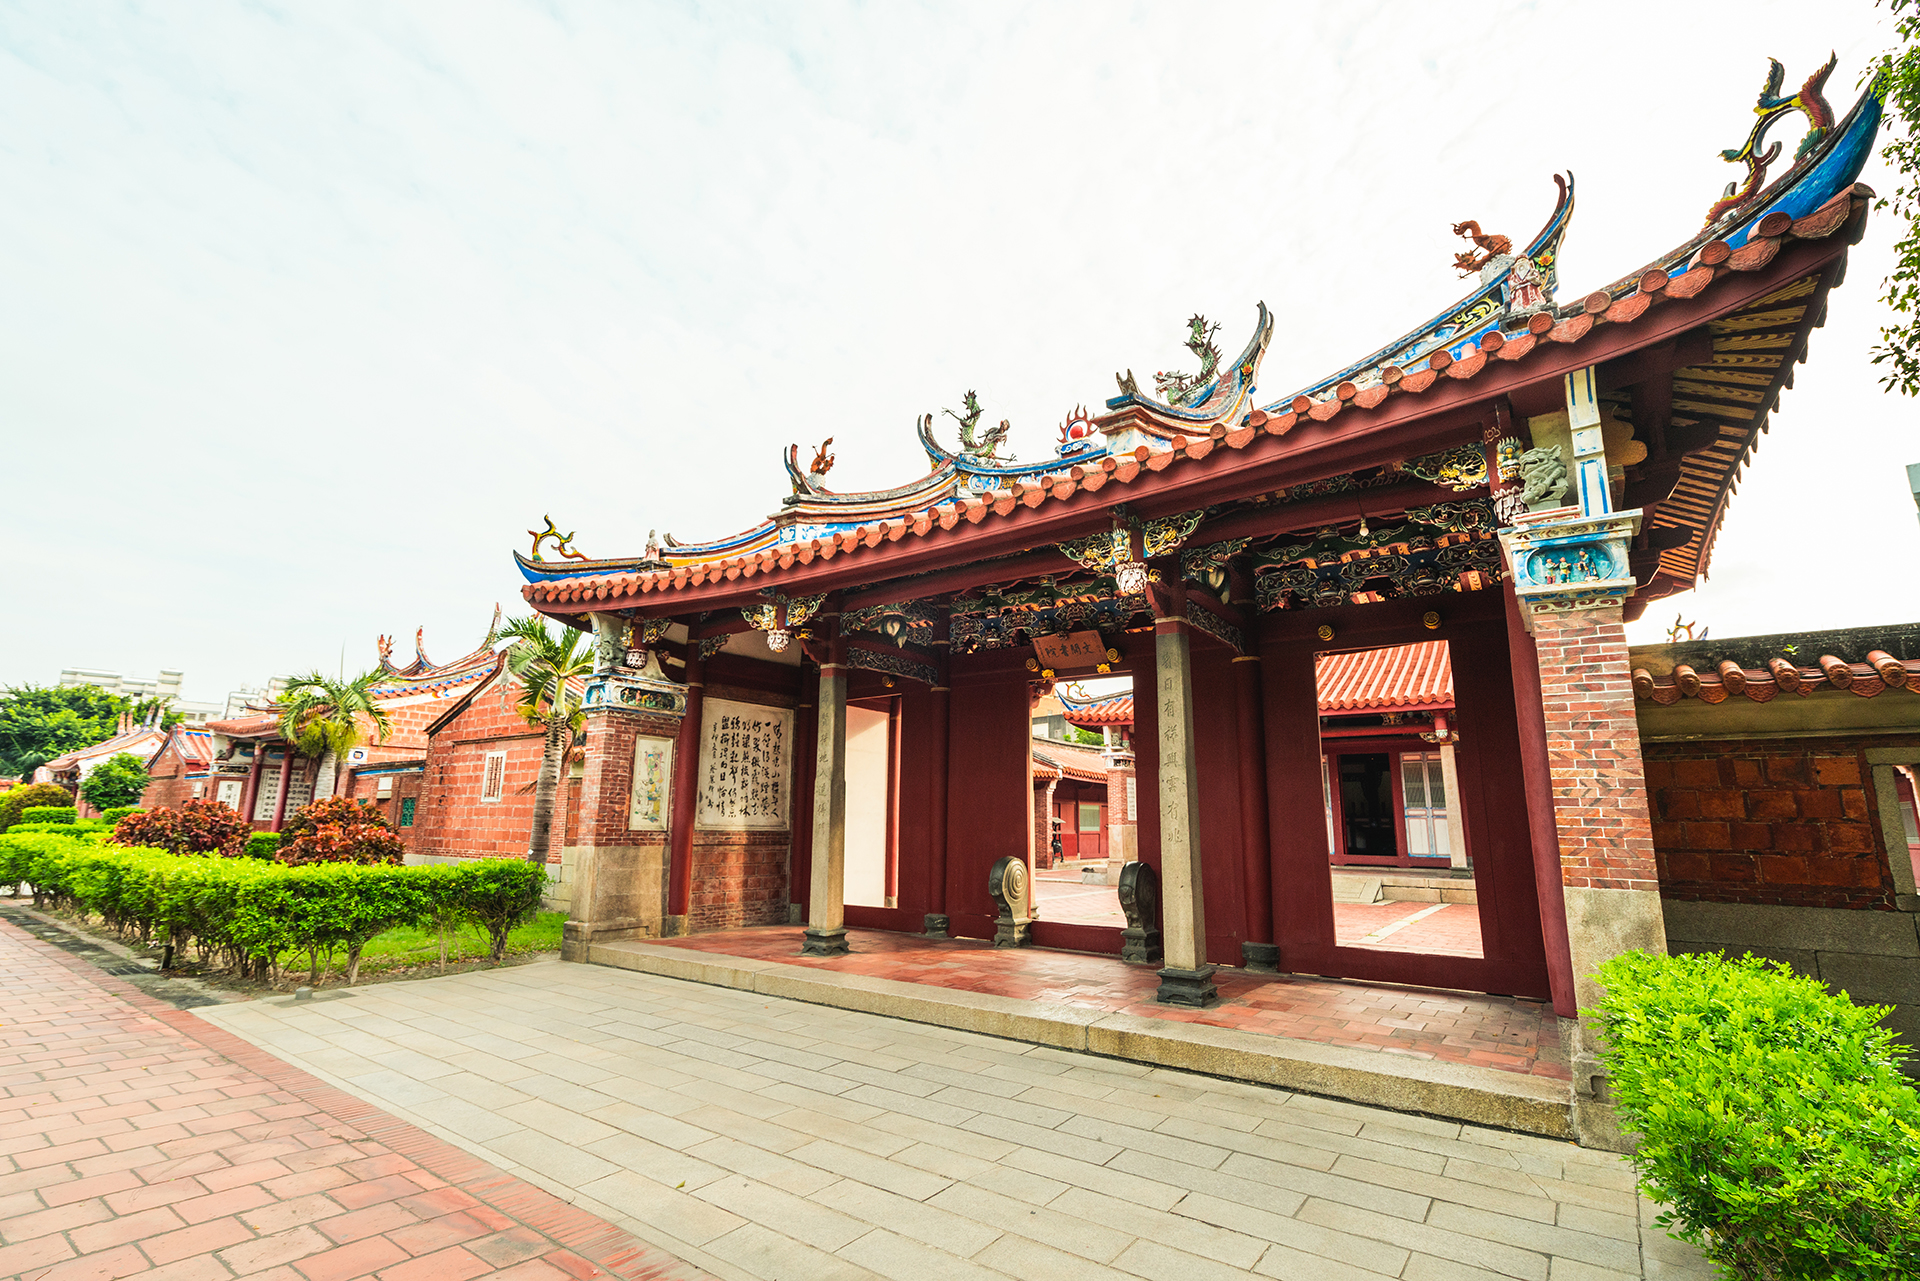 Lukang Wenwu Temple